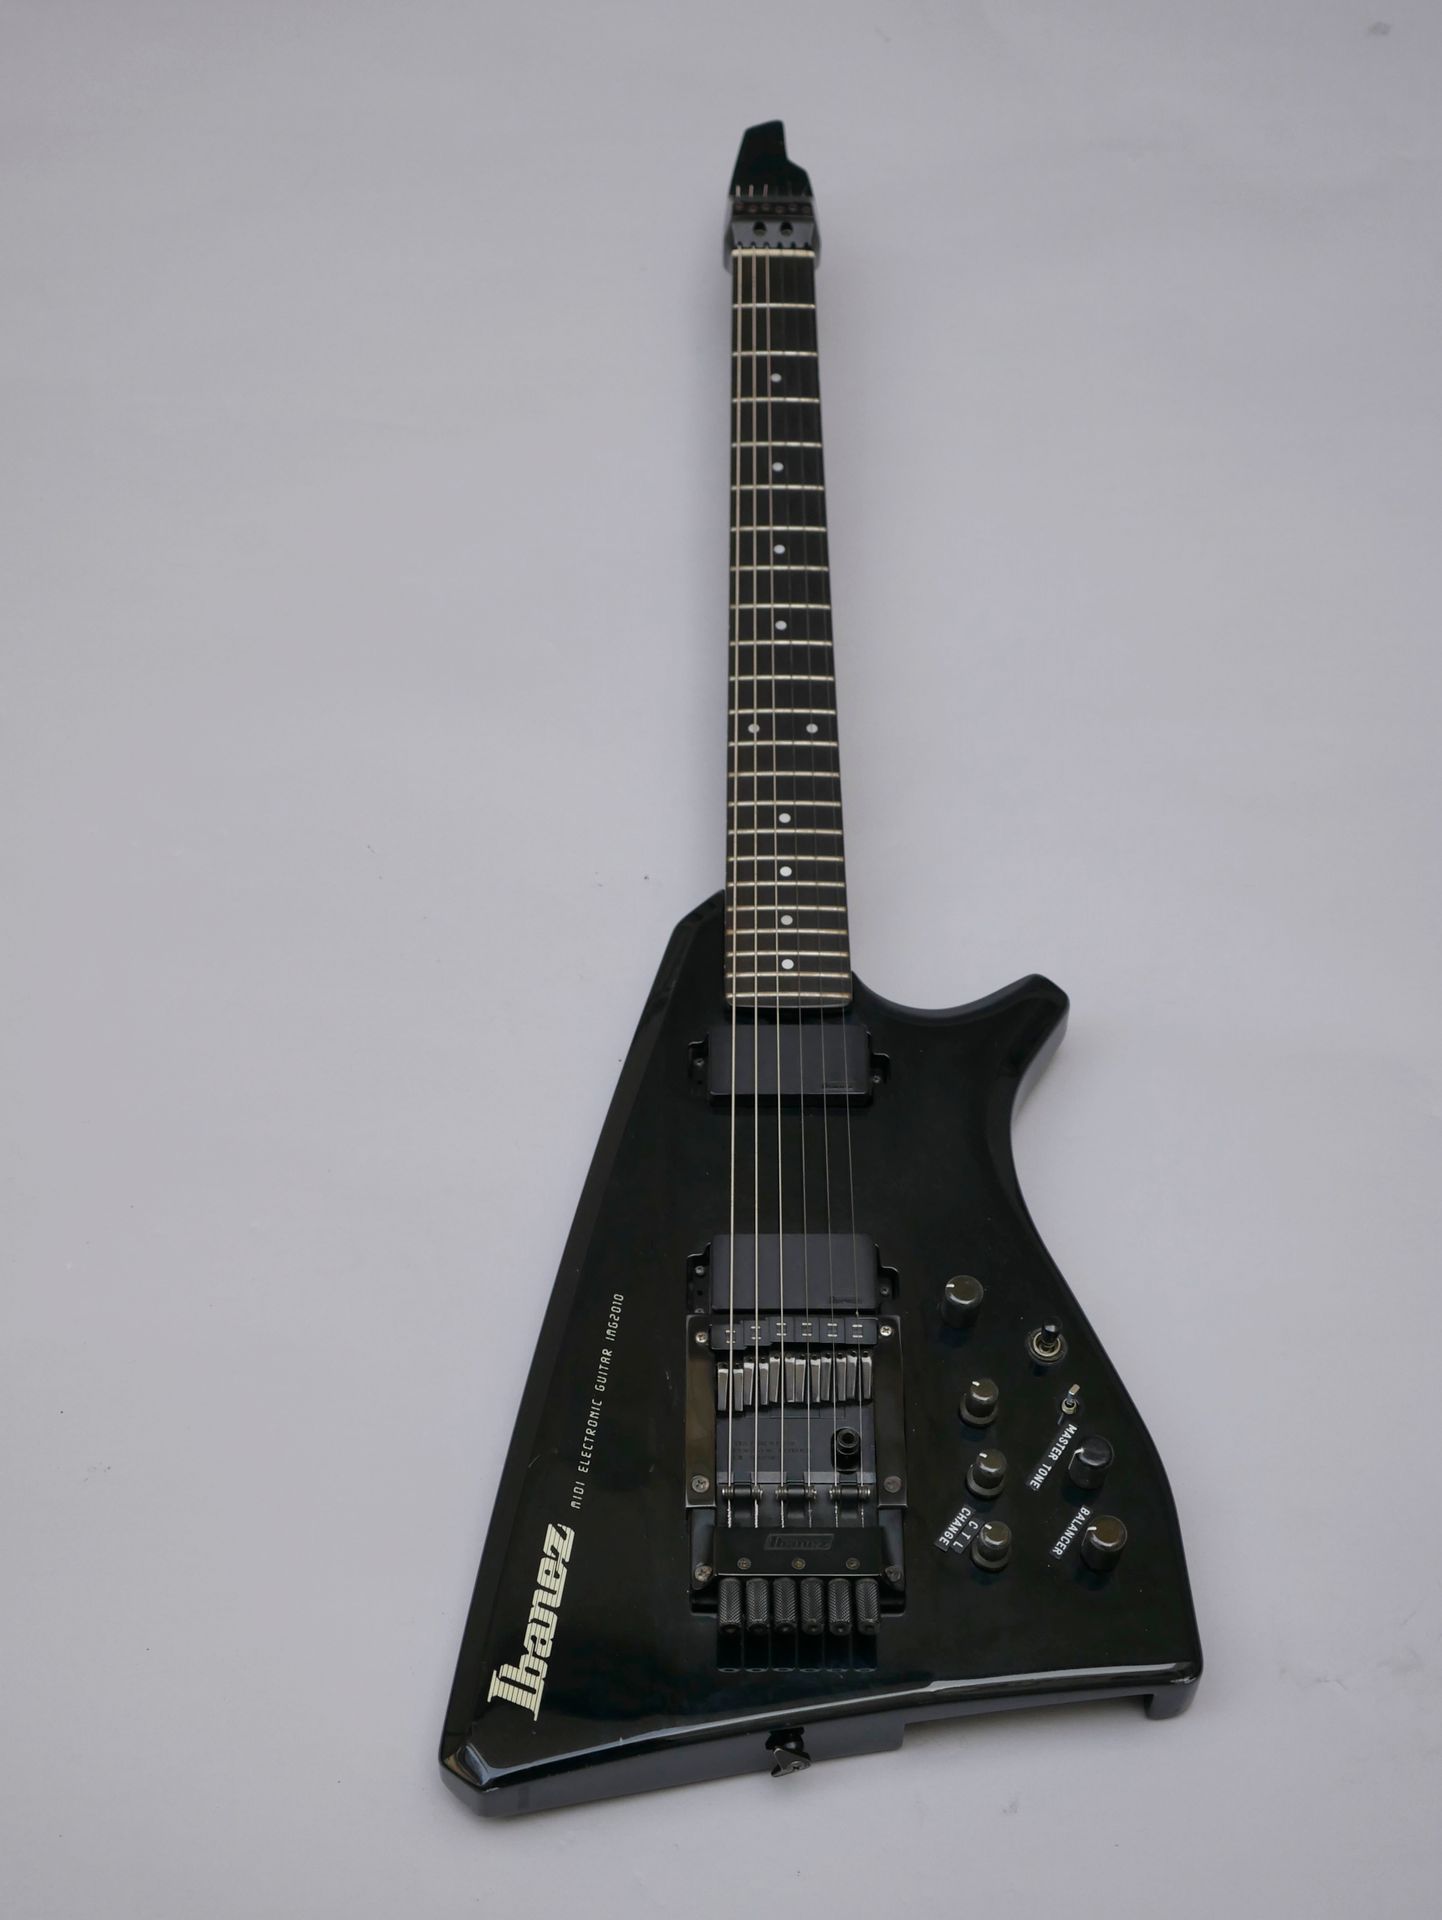 Null Ibanez的实体电吉他，midi电子吉他IMG 2010，日本制造。

原装电缆，揉弦杆和箱子，状态良好，有使用痕迹。

(电子元件未测试)